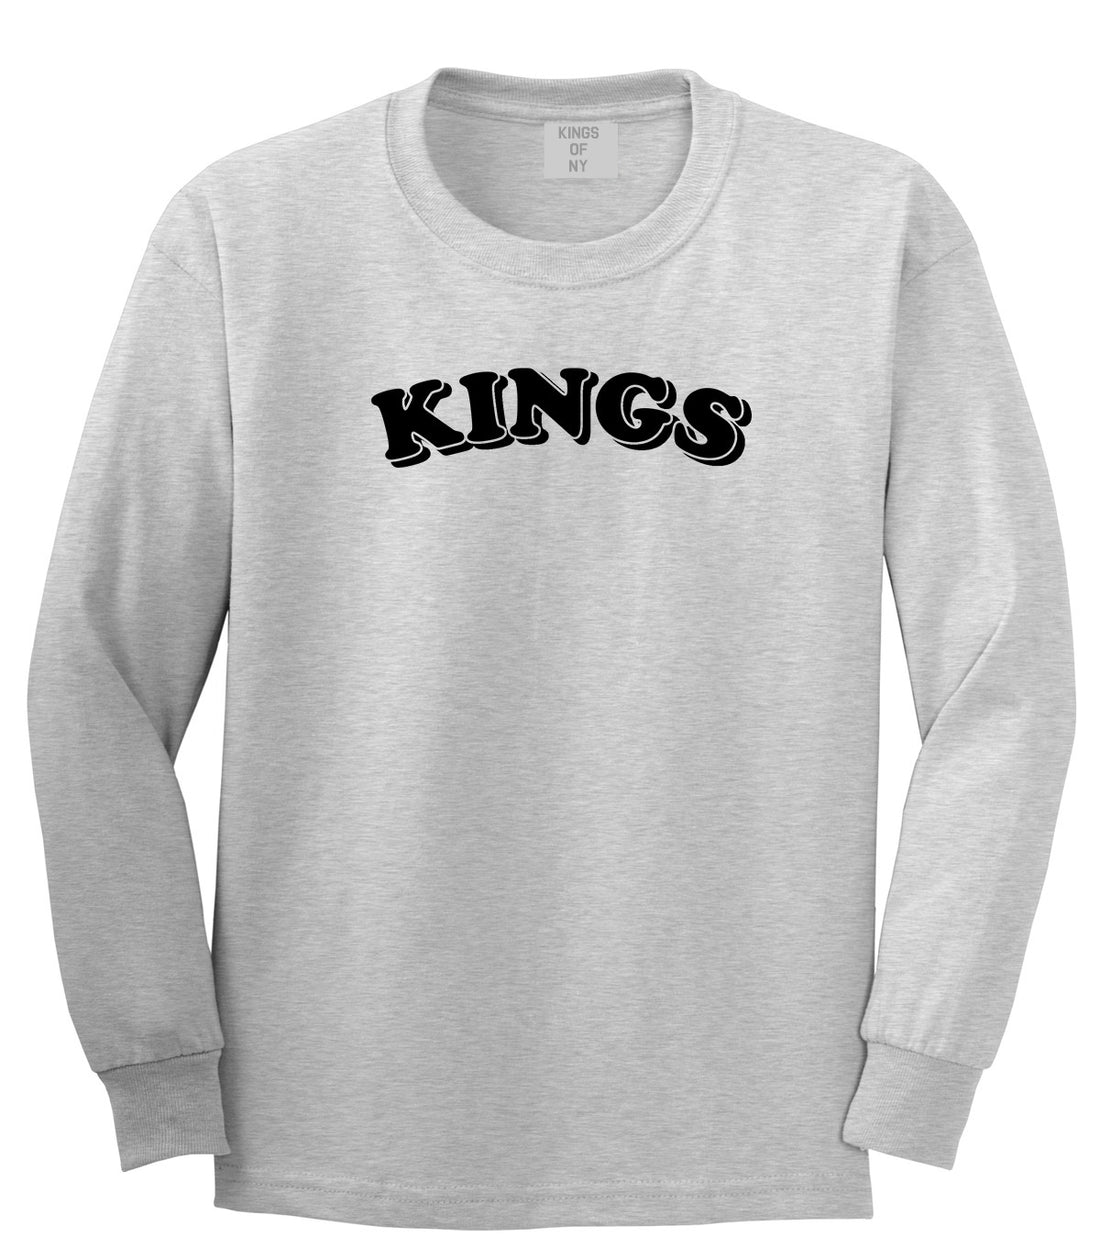 KINGS Bubble Letters Long Sleeve T-Shirt in Grey